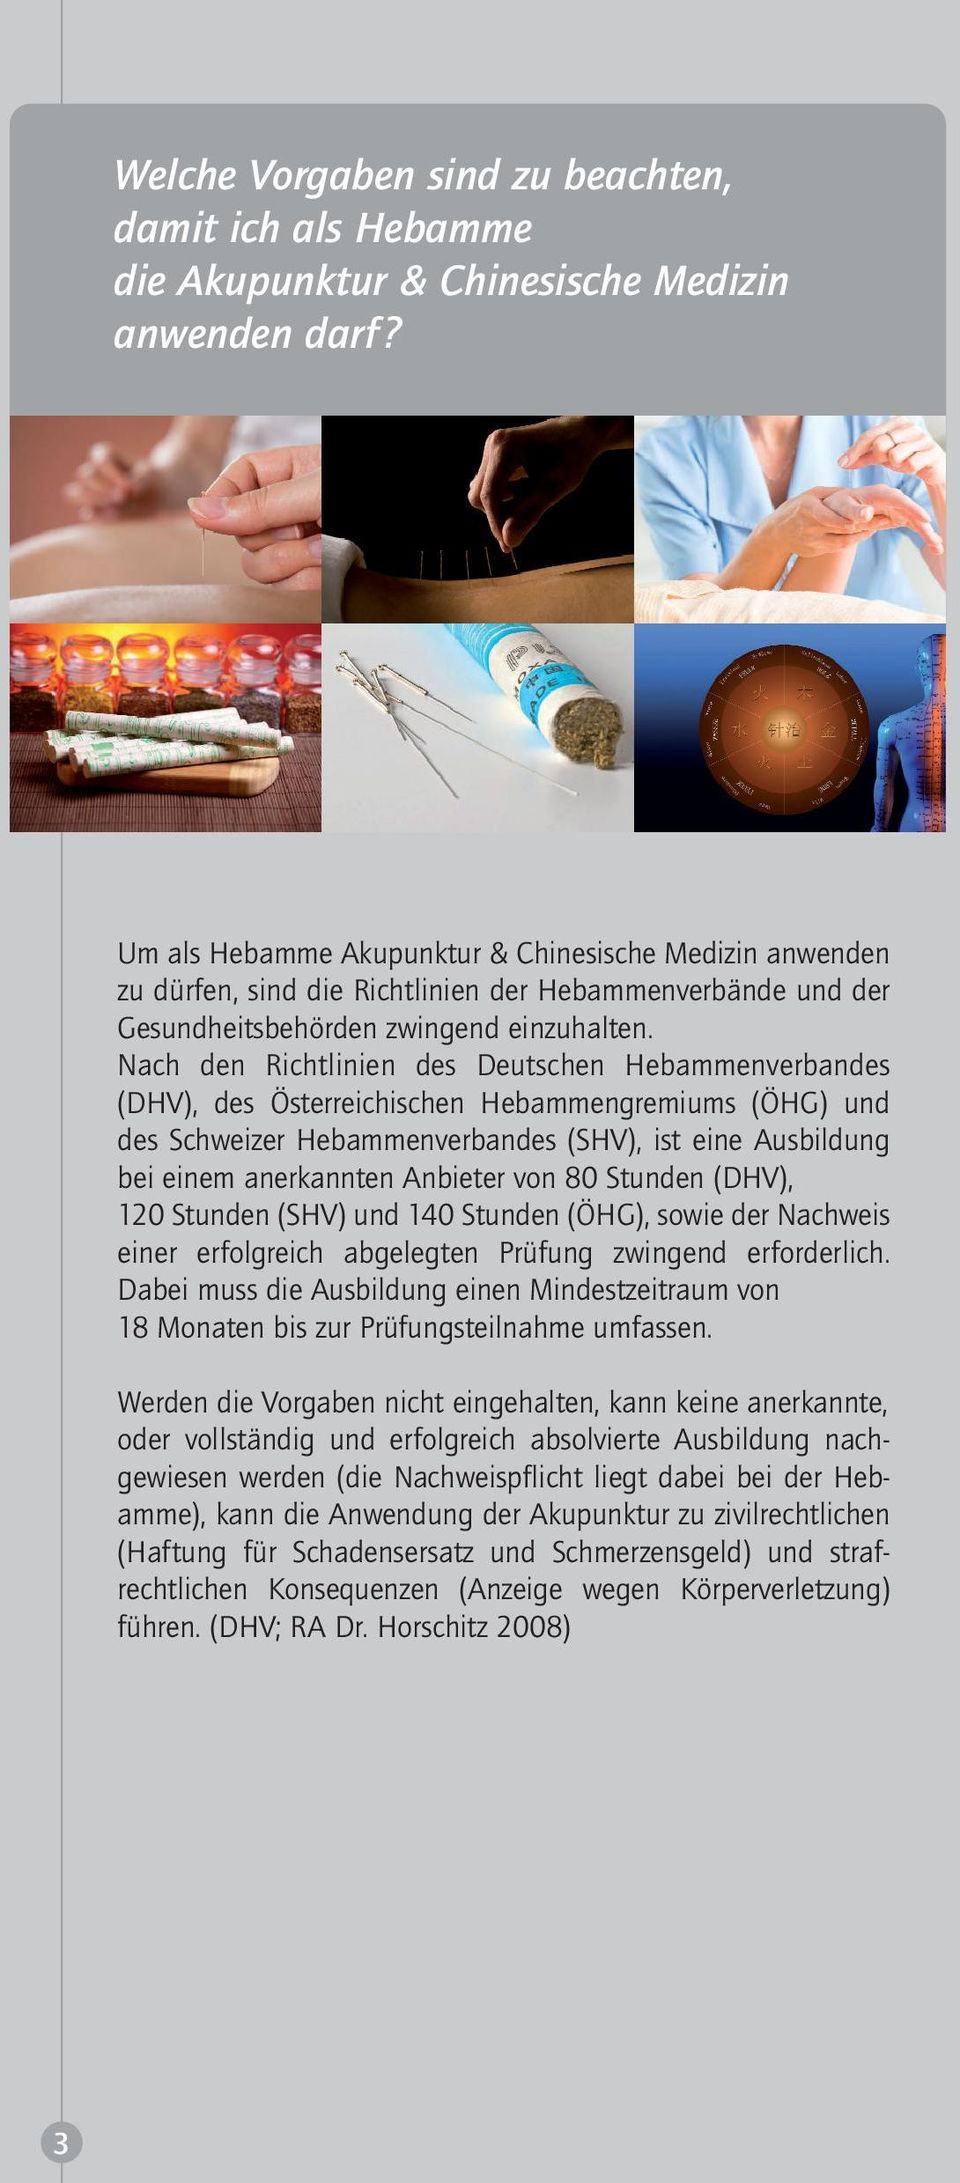 Nach den Richtlinien des Deutschen Hebammenverbandes (DHV), des Österreichischen Hebammengremiums (ÖHG) und des Schweizer Hebammenverbandes (SHV), ist eine Ausbildung bei einem anerkannten Anbieter